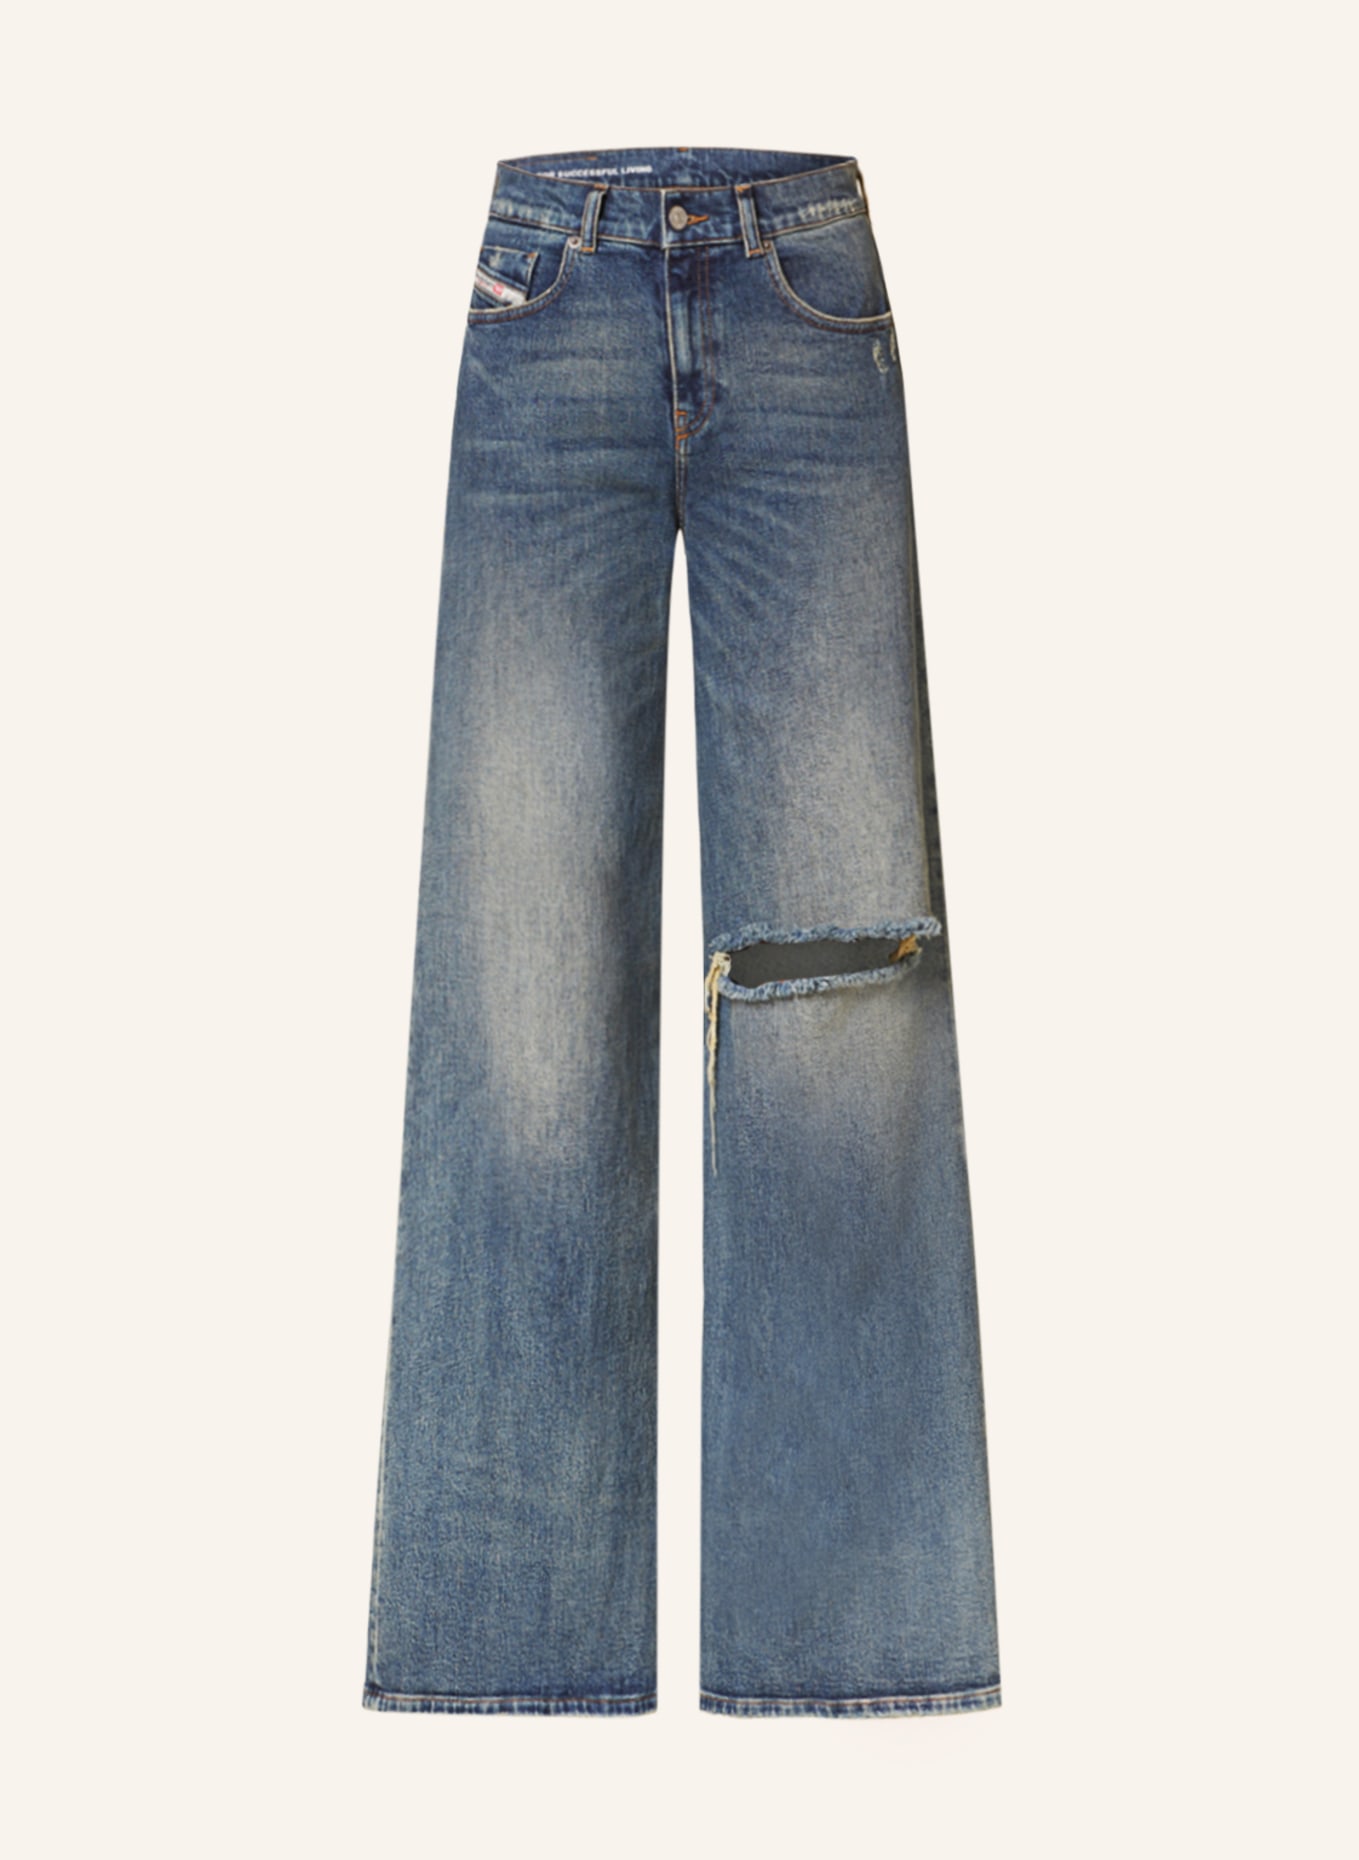 DIESEL Flared Jeans 1978 D-AKEMI, Farbe: 01 MID BLUE (Bild 1)